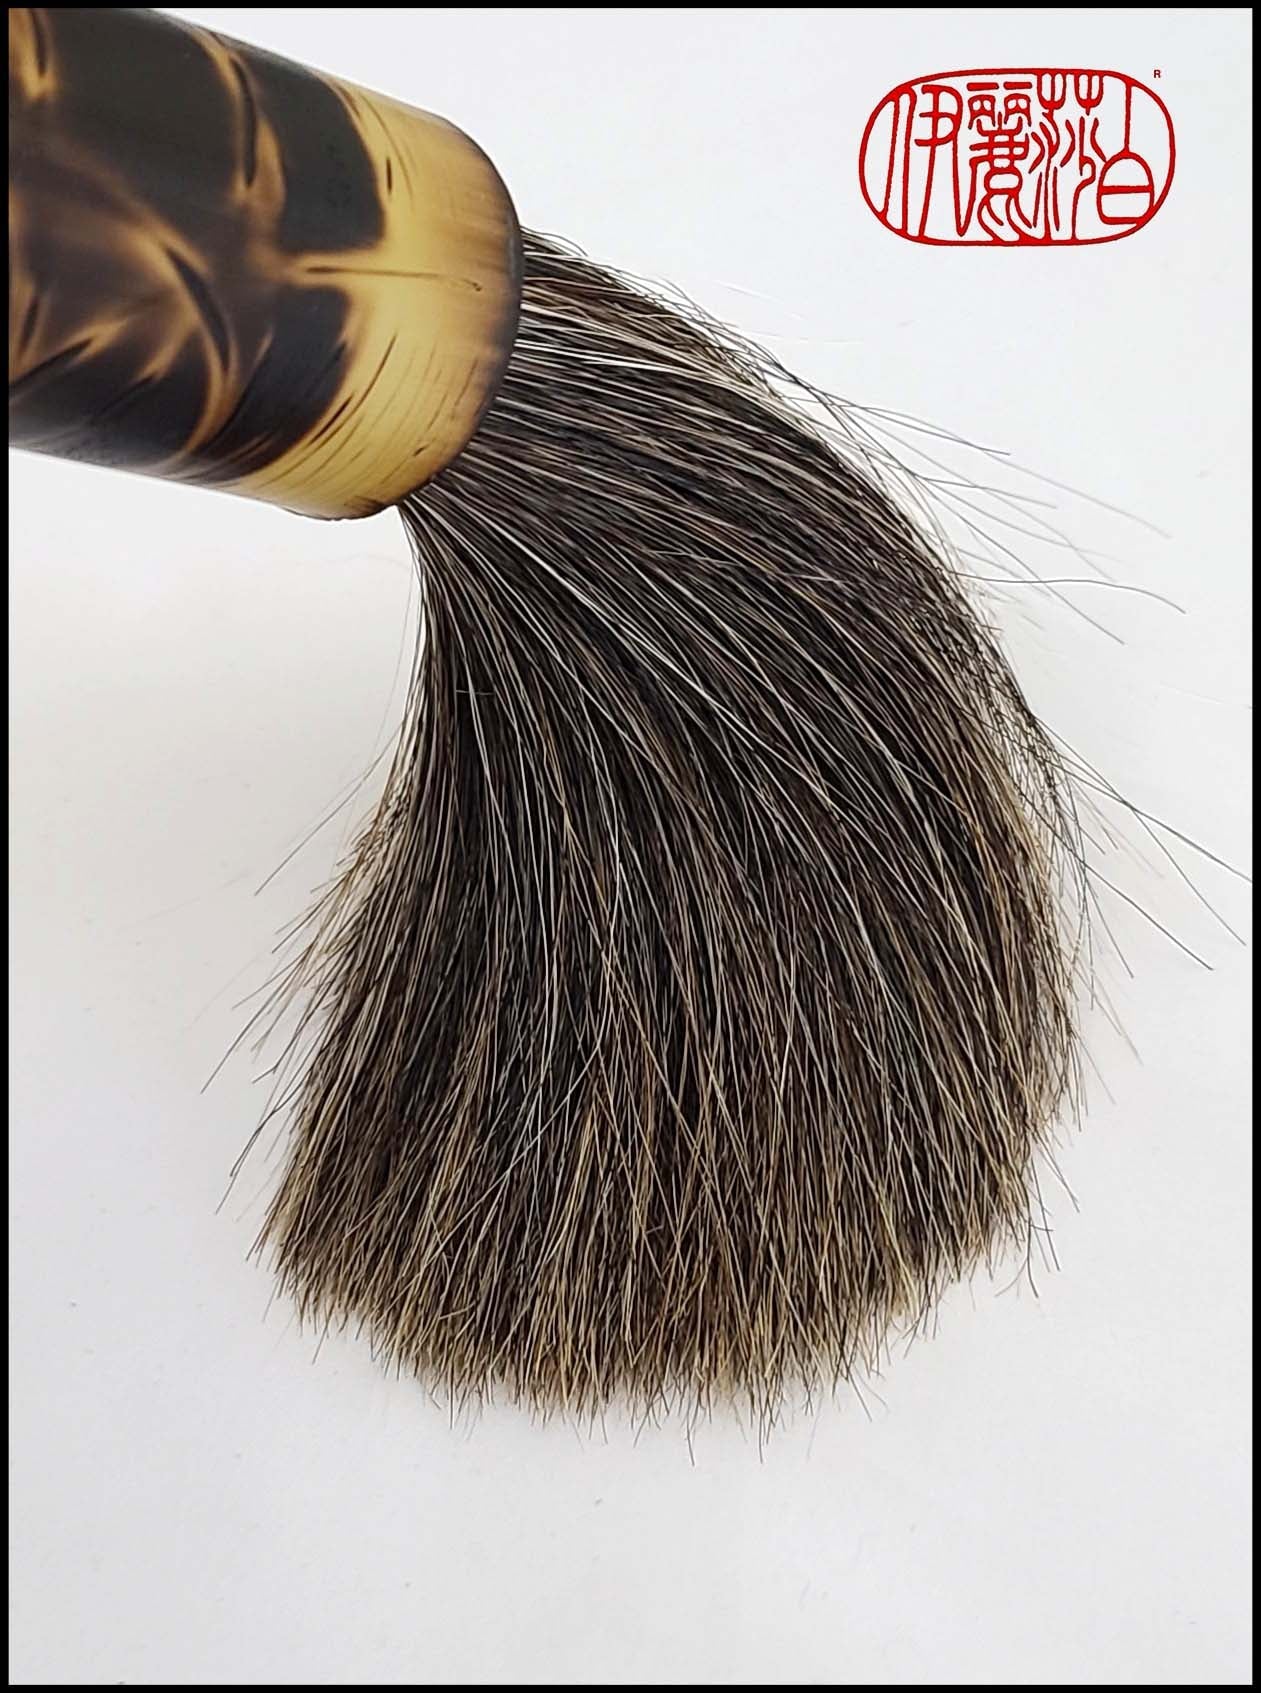 Mixed Horsehair Paint Brush with Bamboo Handle Art Supplies Elizabeth Schowachert Art